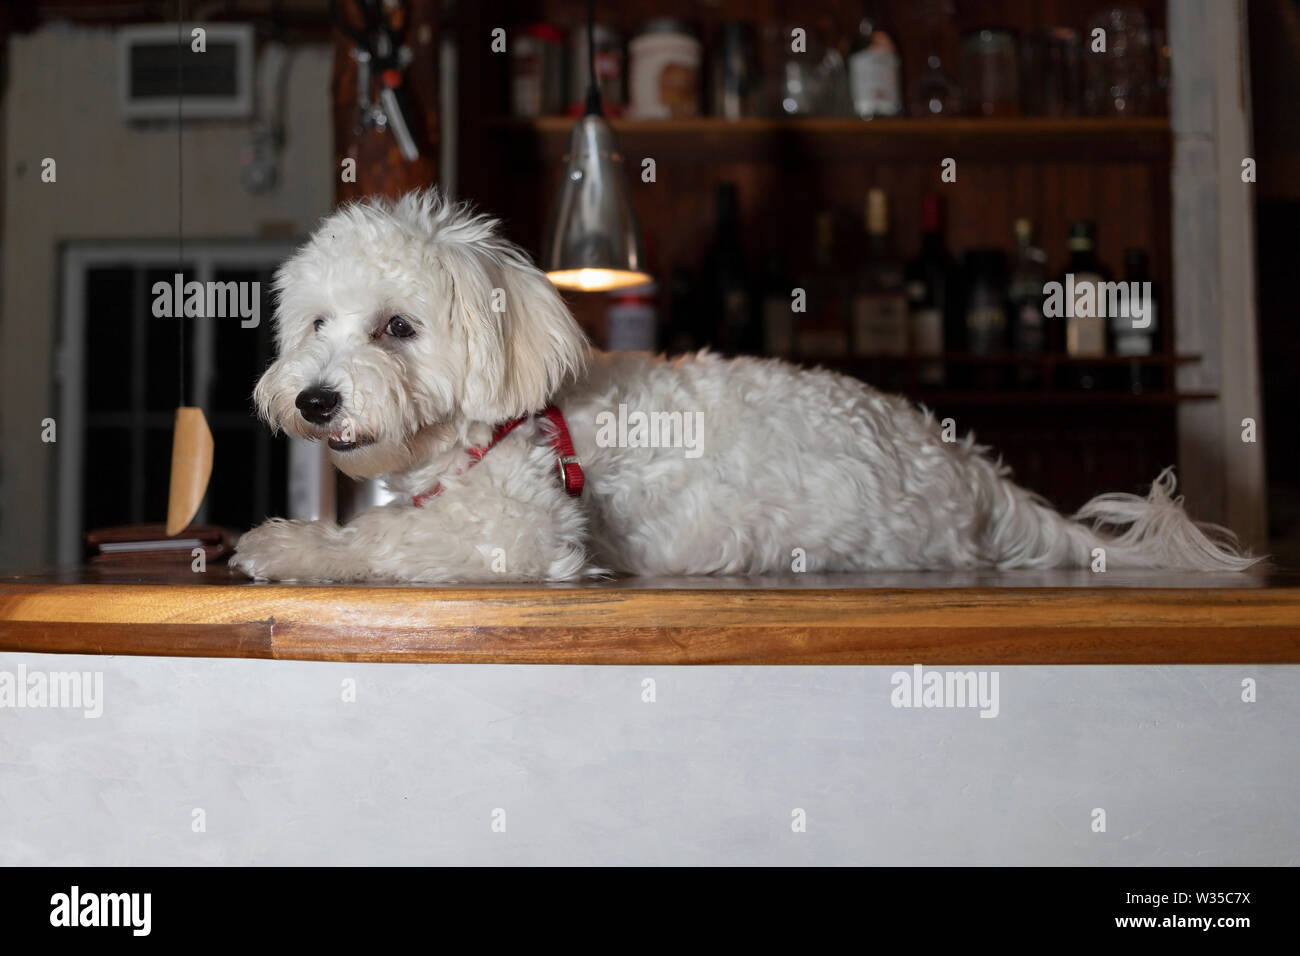 Nanja, Bichon Bologneser doggy, liegend auf einem hölzernen Tresen  Stockfotografie - Alamy